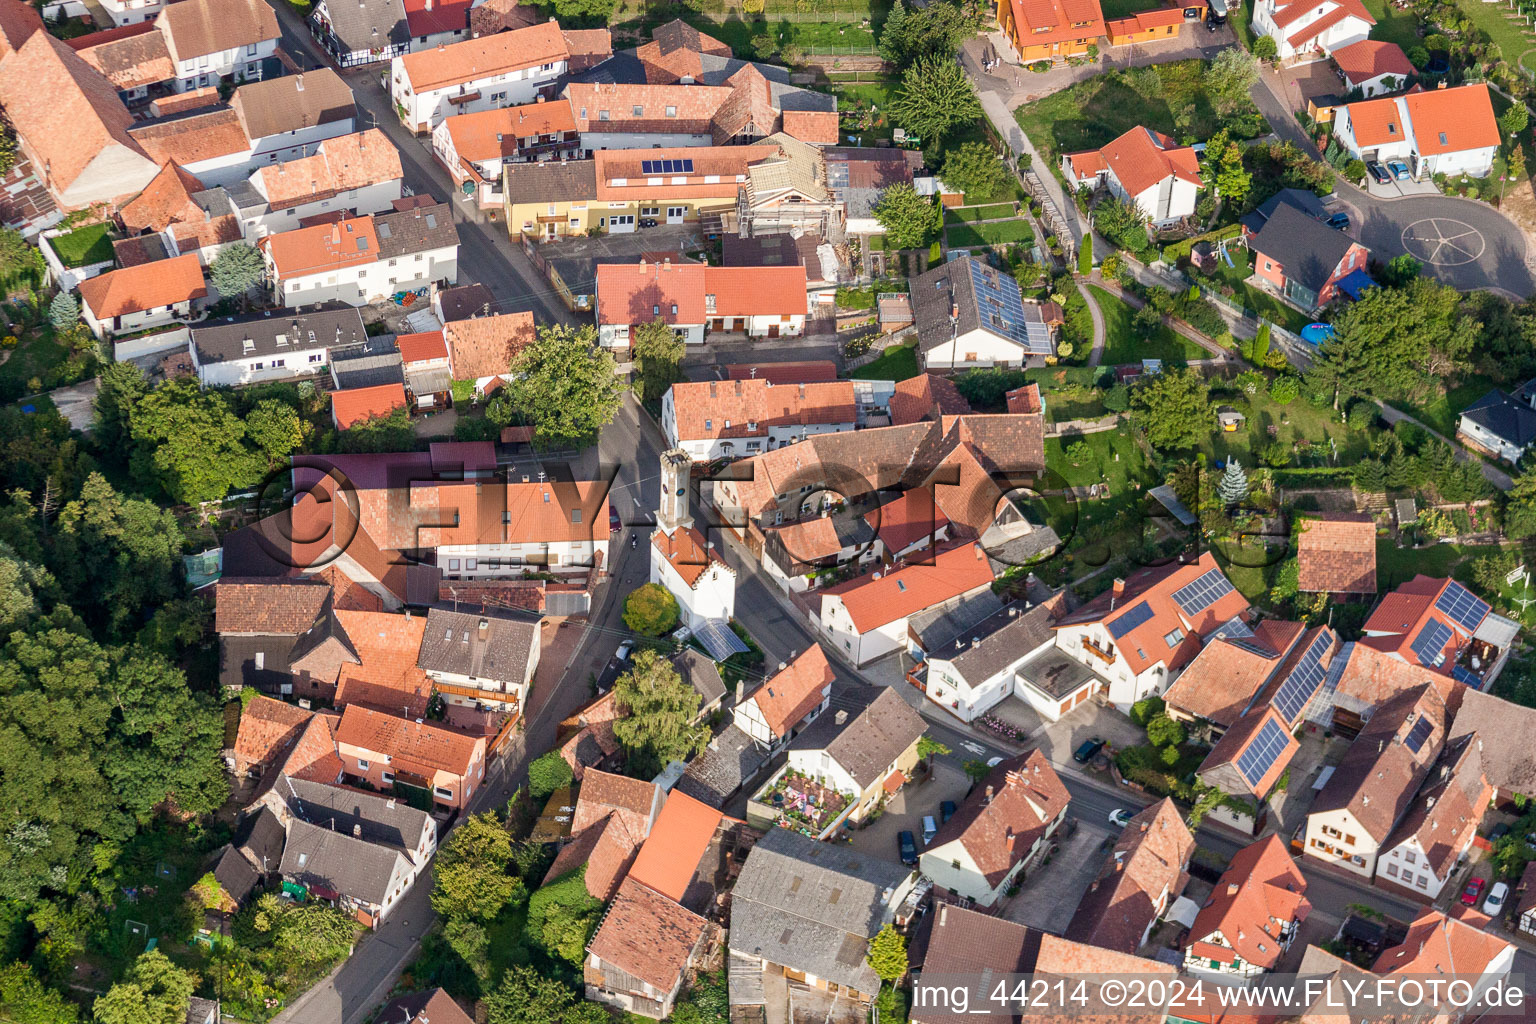 Photographie aérienne de Mairie de l'administration de la ville à Oberhausen dans le département Rhénanie-Palatinat, Allemagne